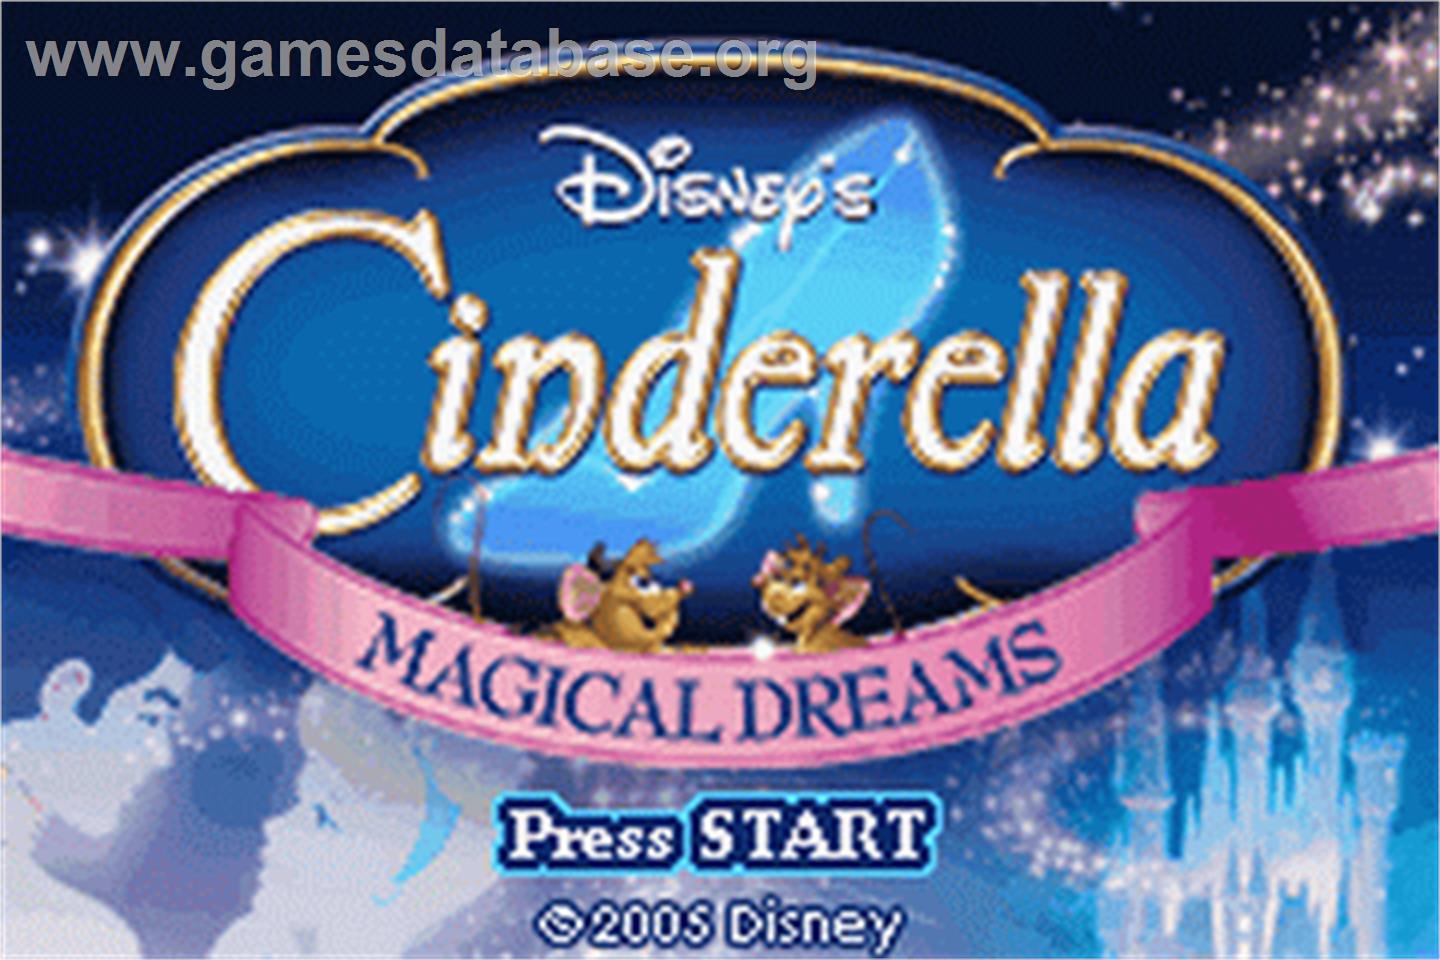 Cinderella: Magical Dreams - Nintendo Game Boy Advance - Artwork - Title Screen